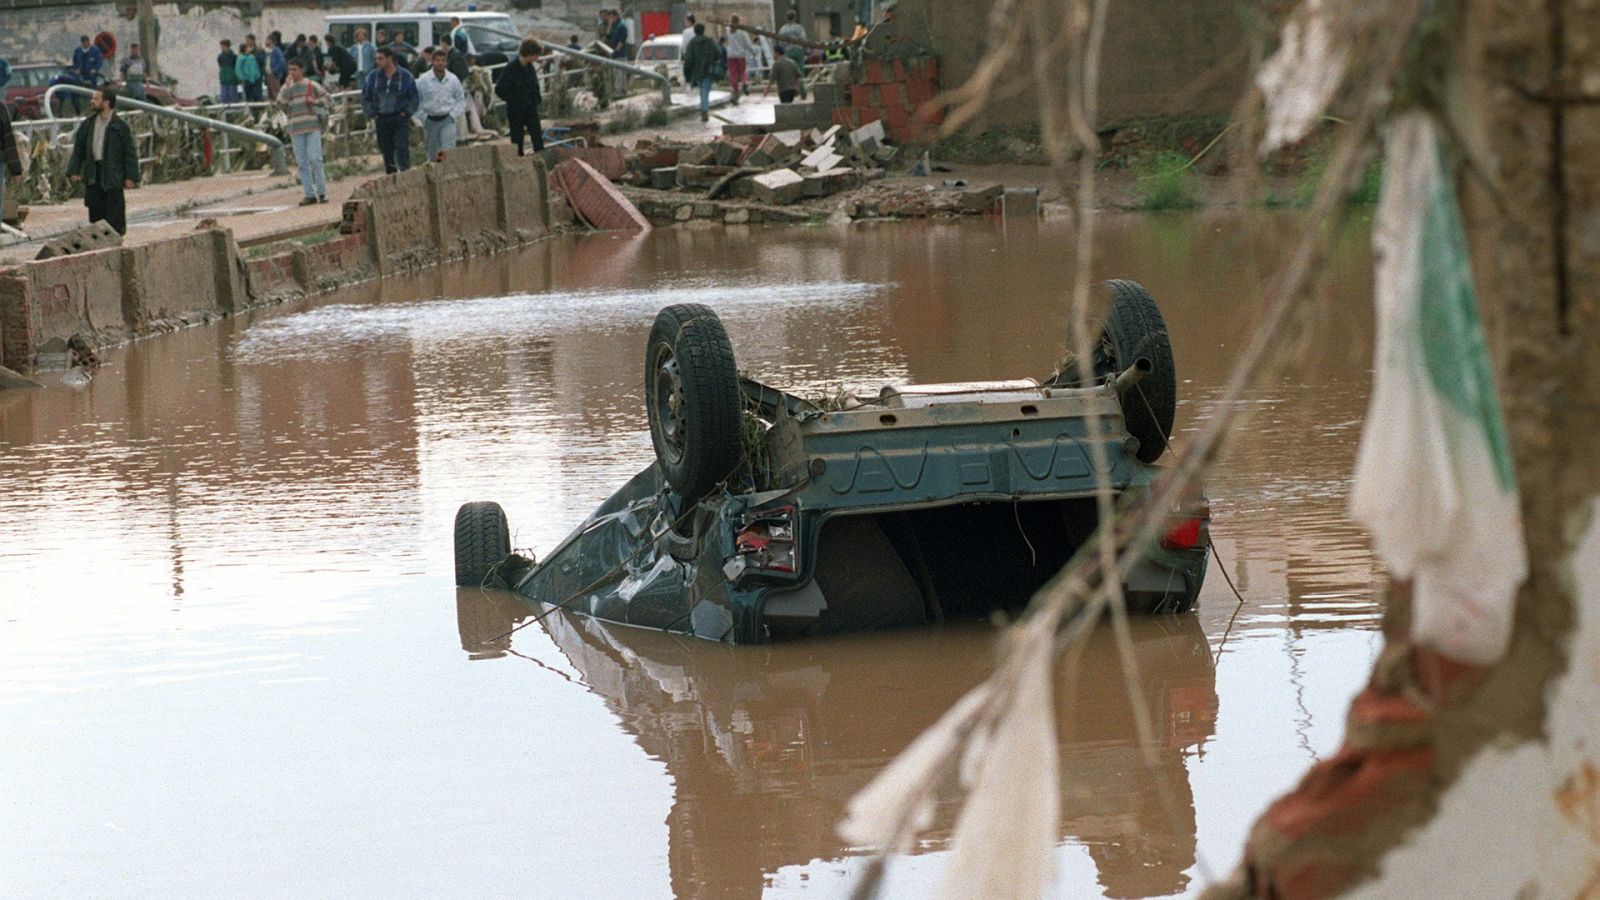 25 años de la riada de Badajoz: "Me asomé y vi una ola enfrente"